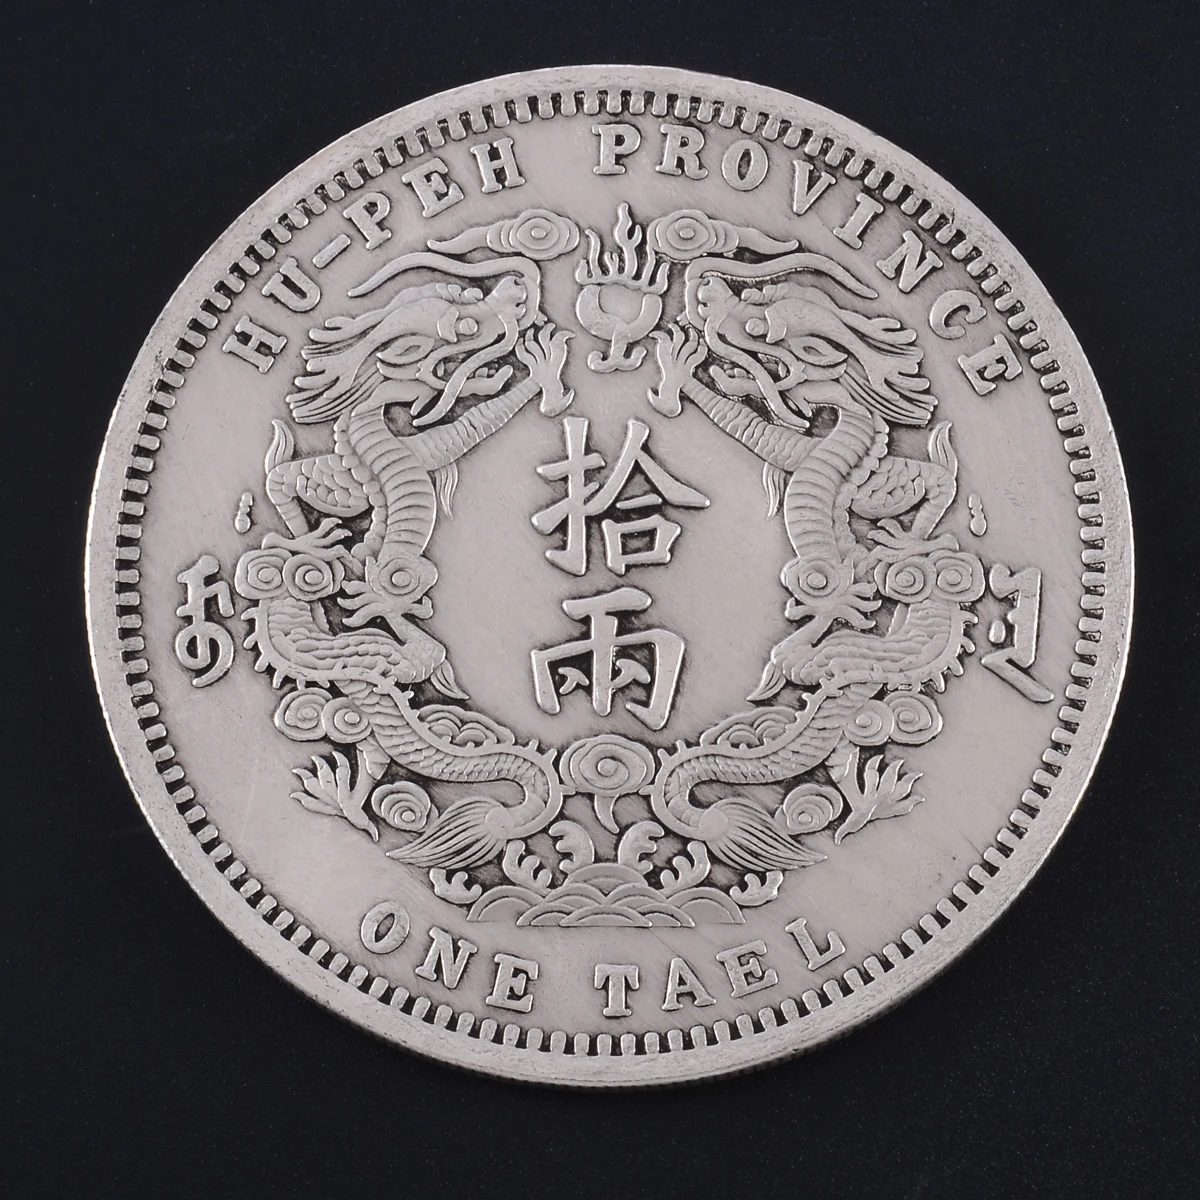 Новые редкие монеты иностранных валют техника литья тибетского серебра Китай Ручная работа да Цин династии дракона памятная монета